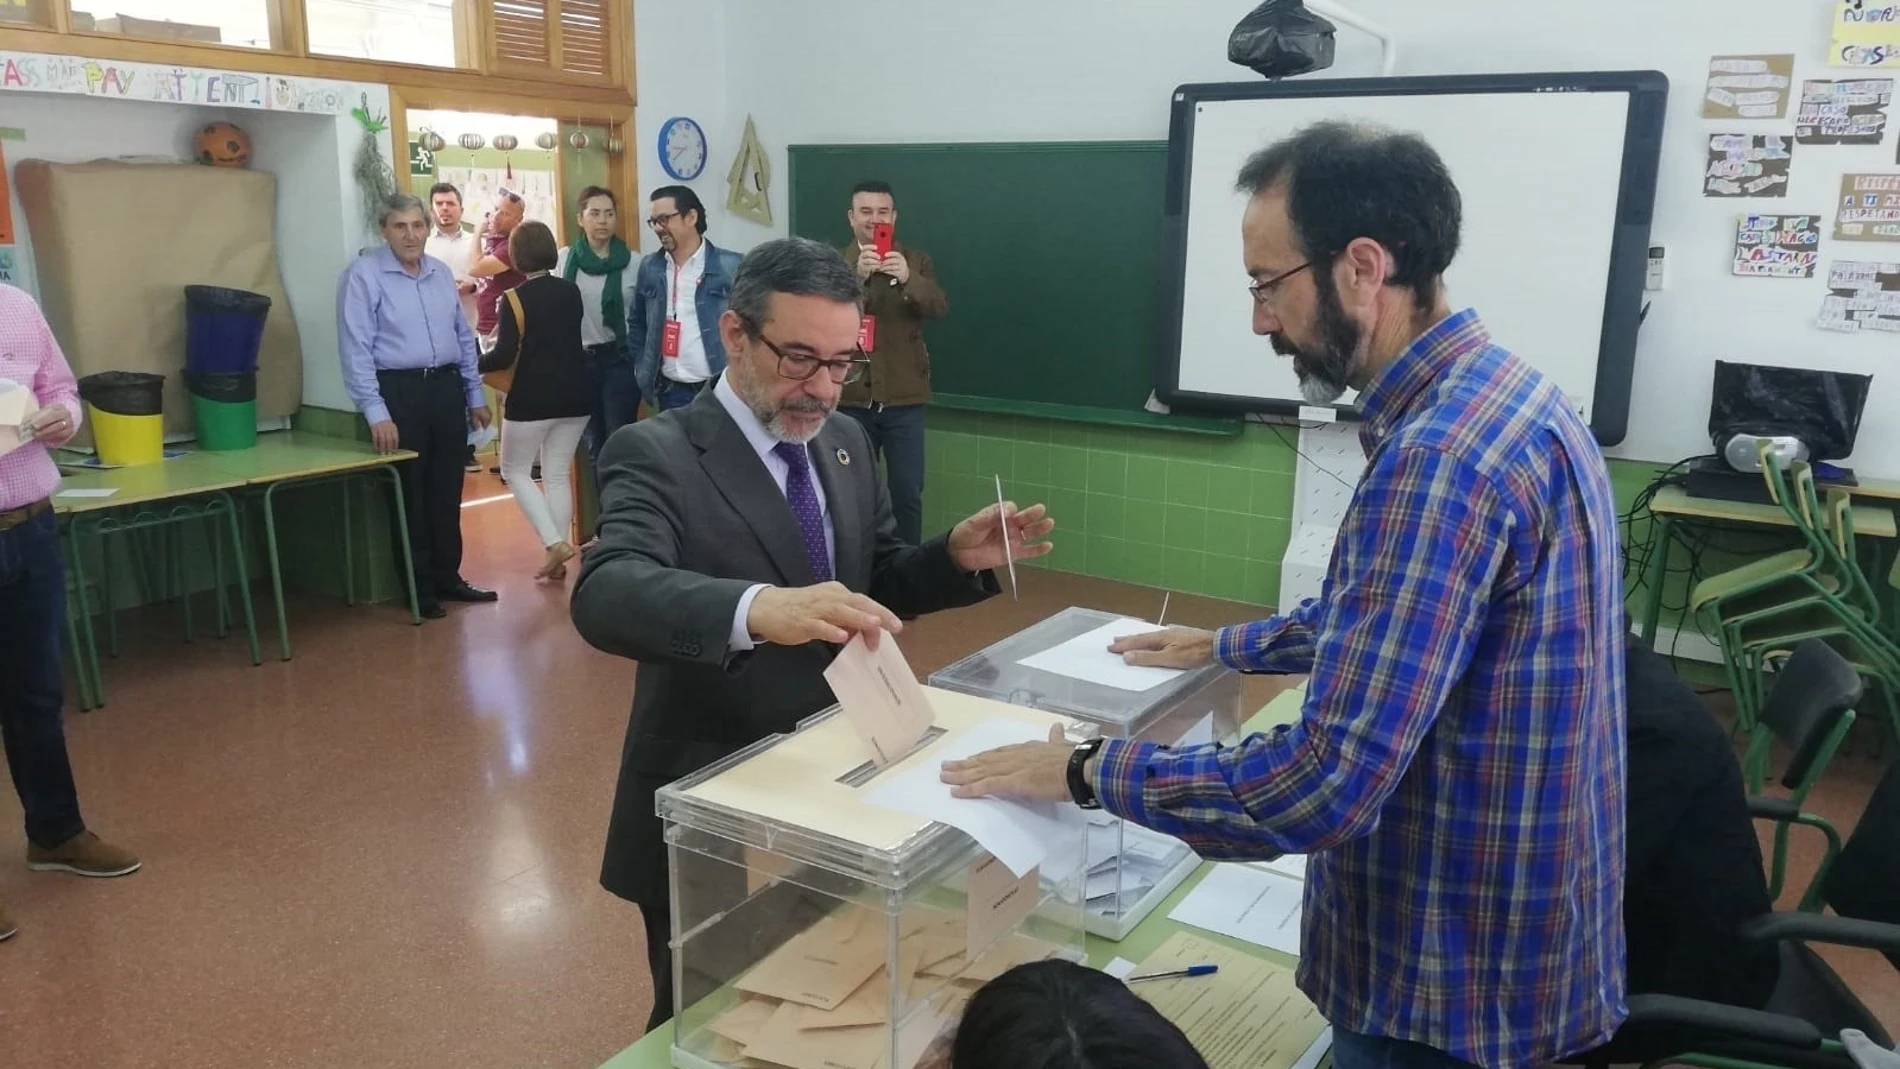 El Delegado del Gobierno, Francisco Jiménez, ejerció su derecho al voto enel CEIP La Arboleda de Murcia. LA RAZÓN